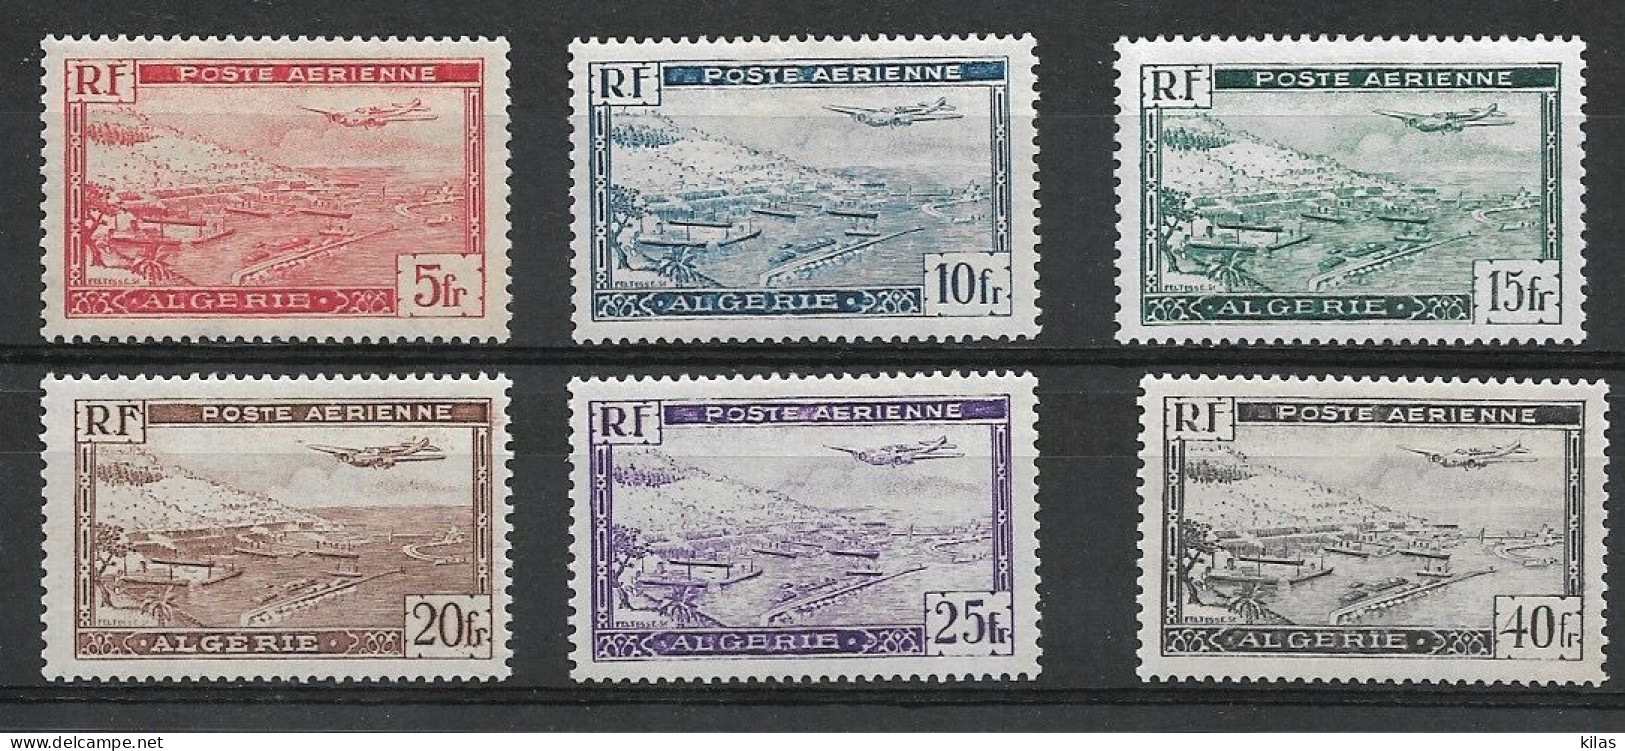 ALGERIA 1946/47 AIRMAIL MNH - Poste Aérienne